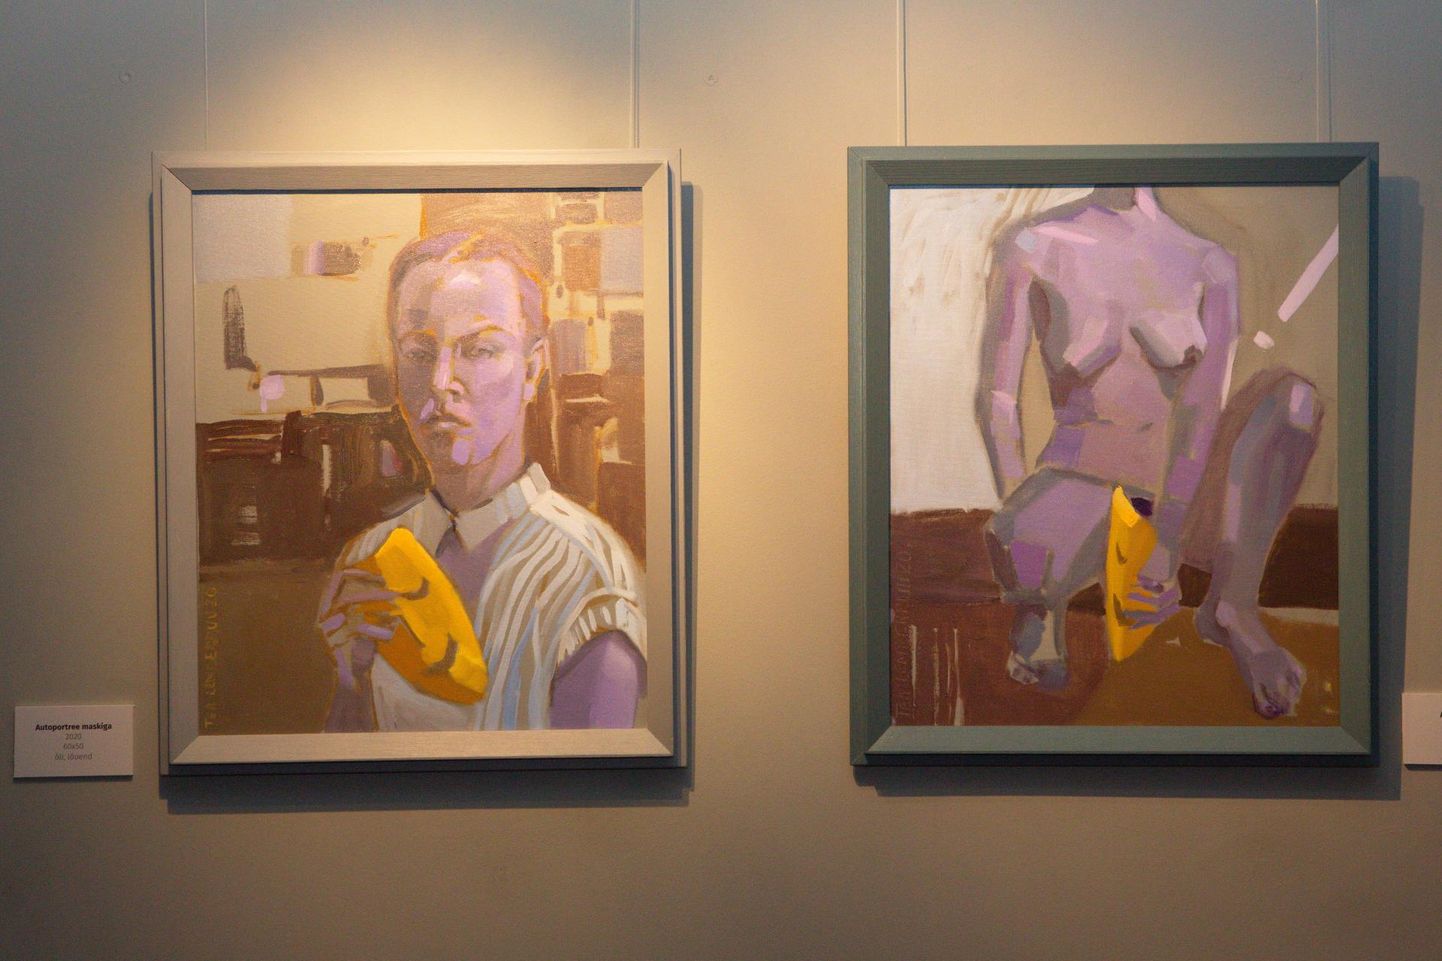 Tea Lemberpuu näitusel Promenaadiviies on «Autoportree maskiga» kõrval «Akt kollase maskiga», mõlemad tänavu maalitud.